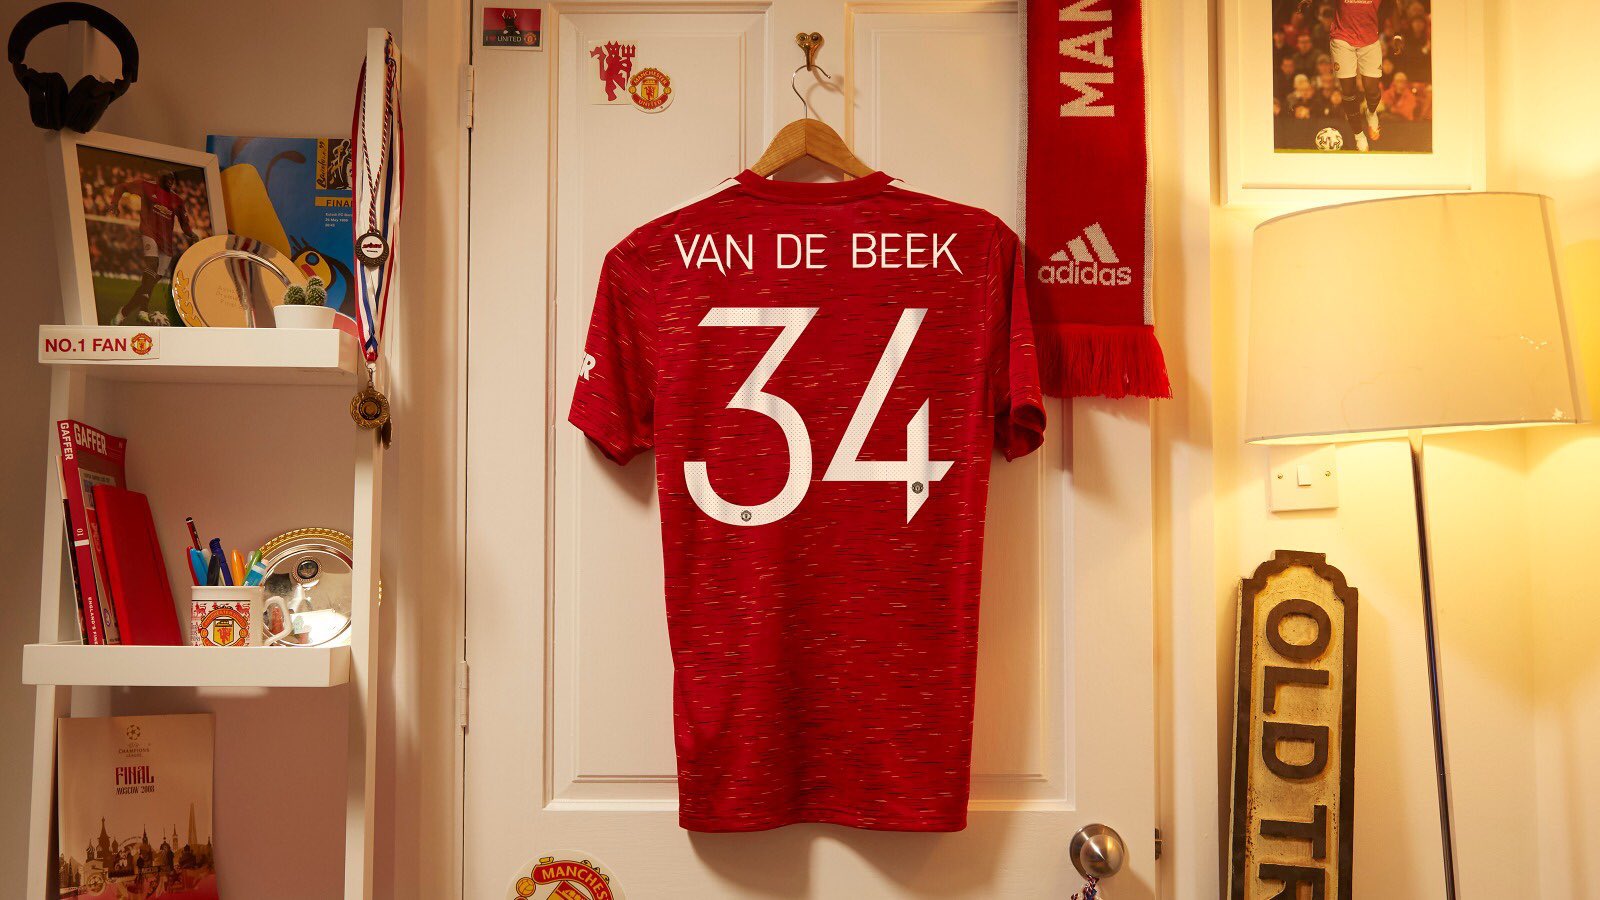 Donny Van De Beek Manchester United wallpaper